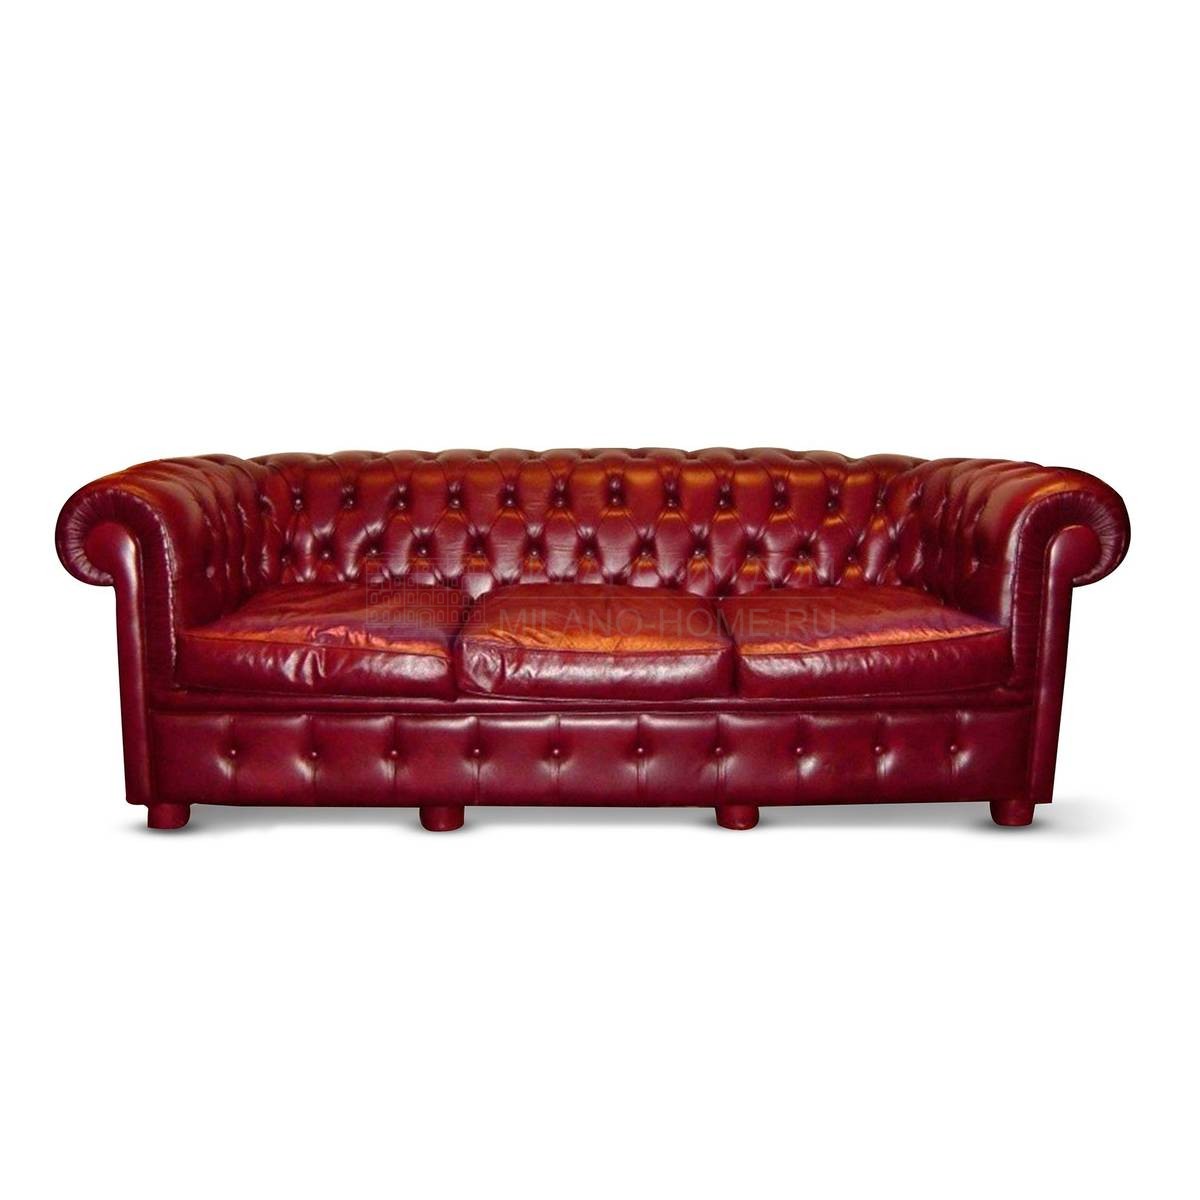 Прямой диван The Upholstery/D30 из Италии фабрики FRANCESCO MOLON